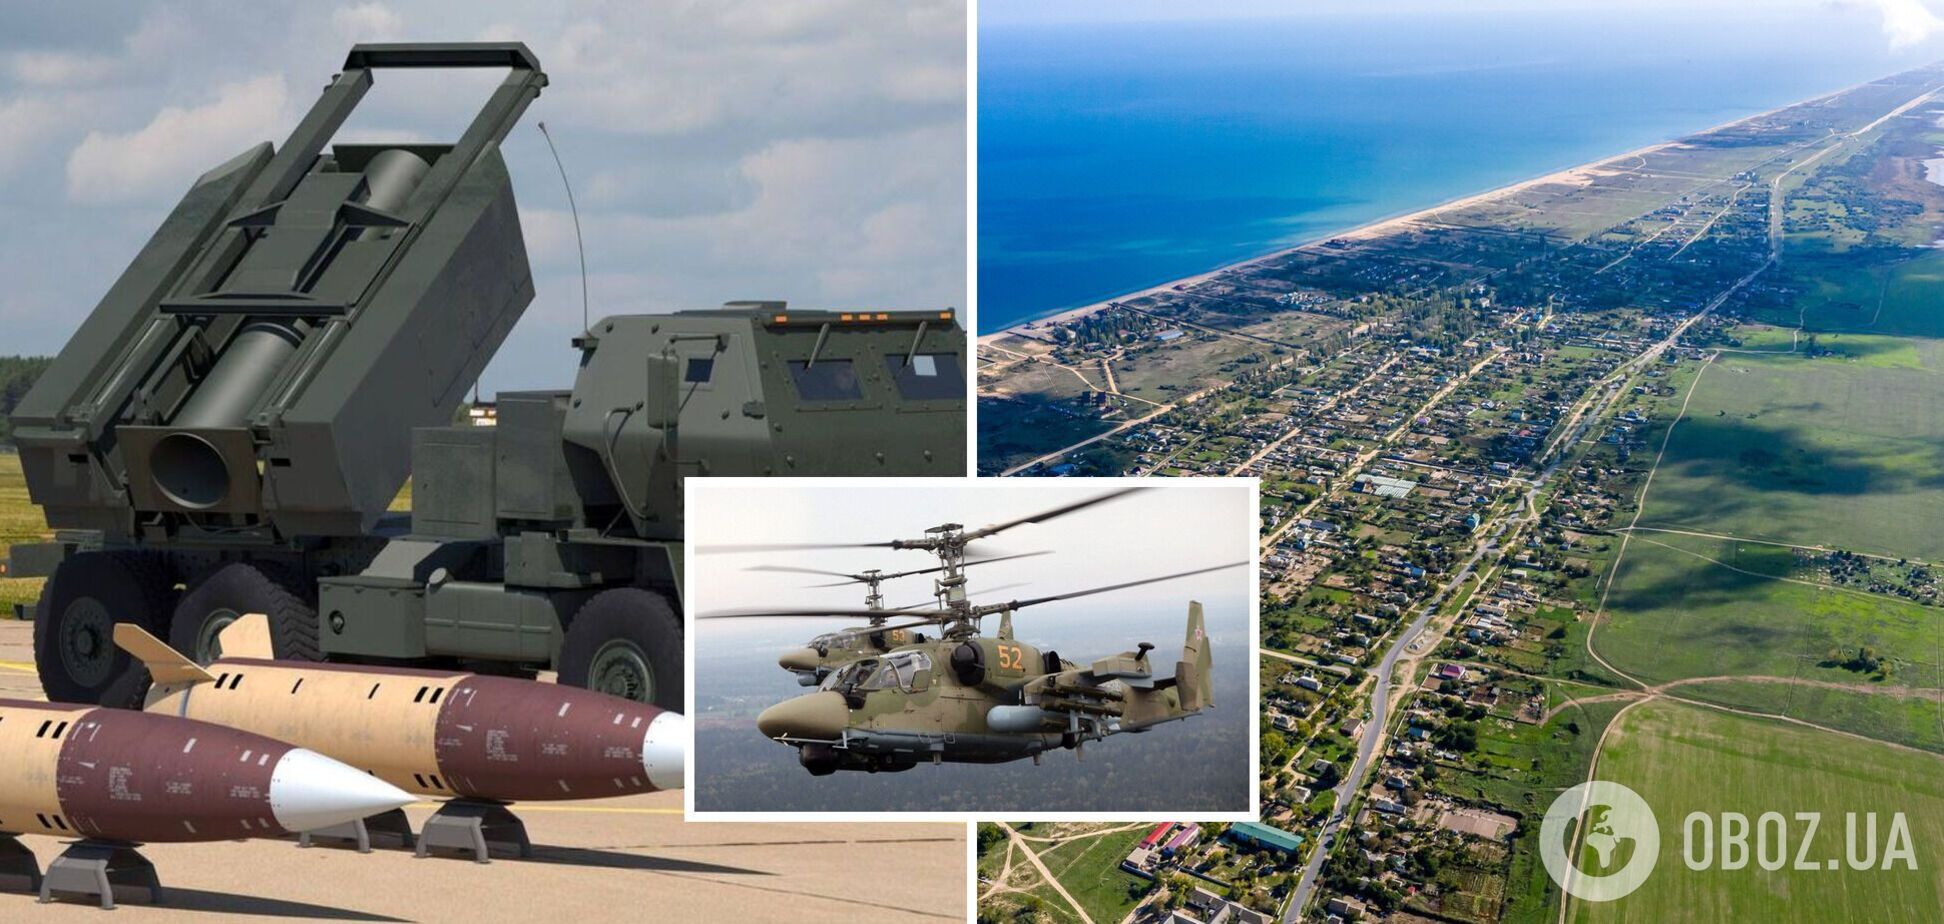 Враг сделал 'аэродромы подскока' в Крыму: зачем они и насколько уязвимы для ракет ВСУ. Интервью с полковником Свитаном